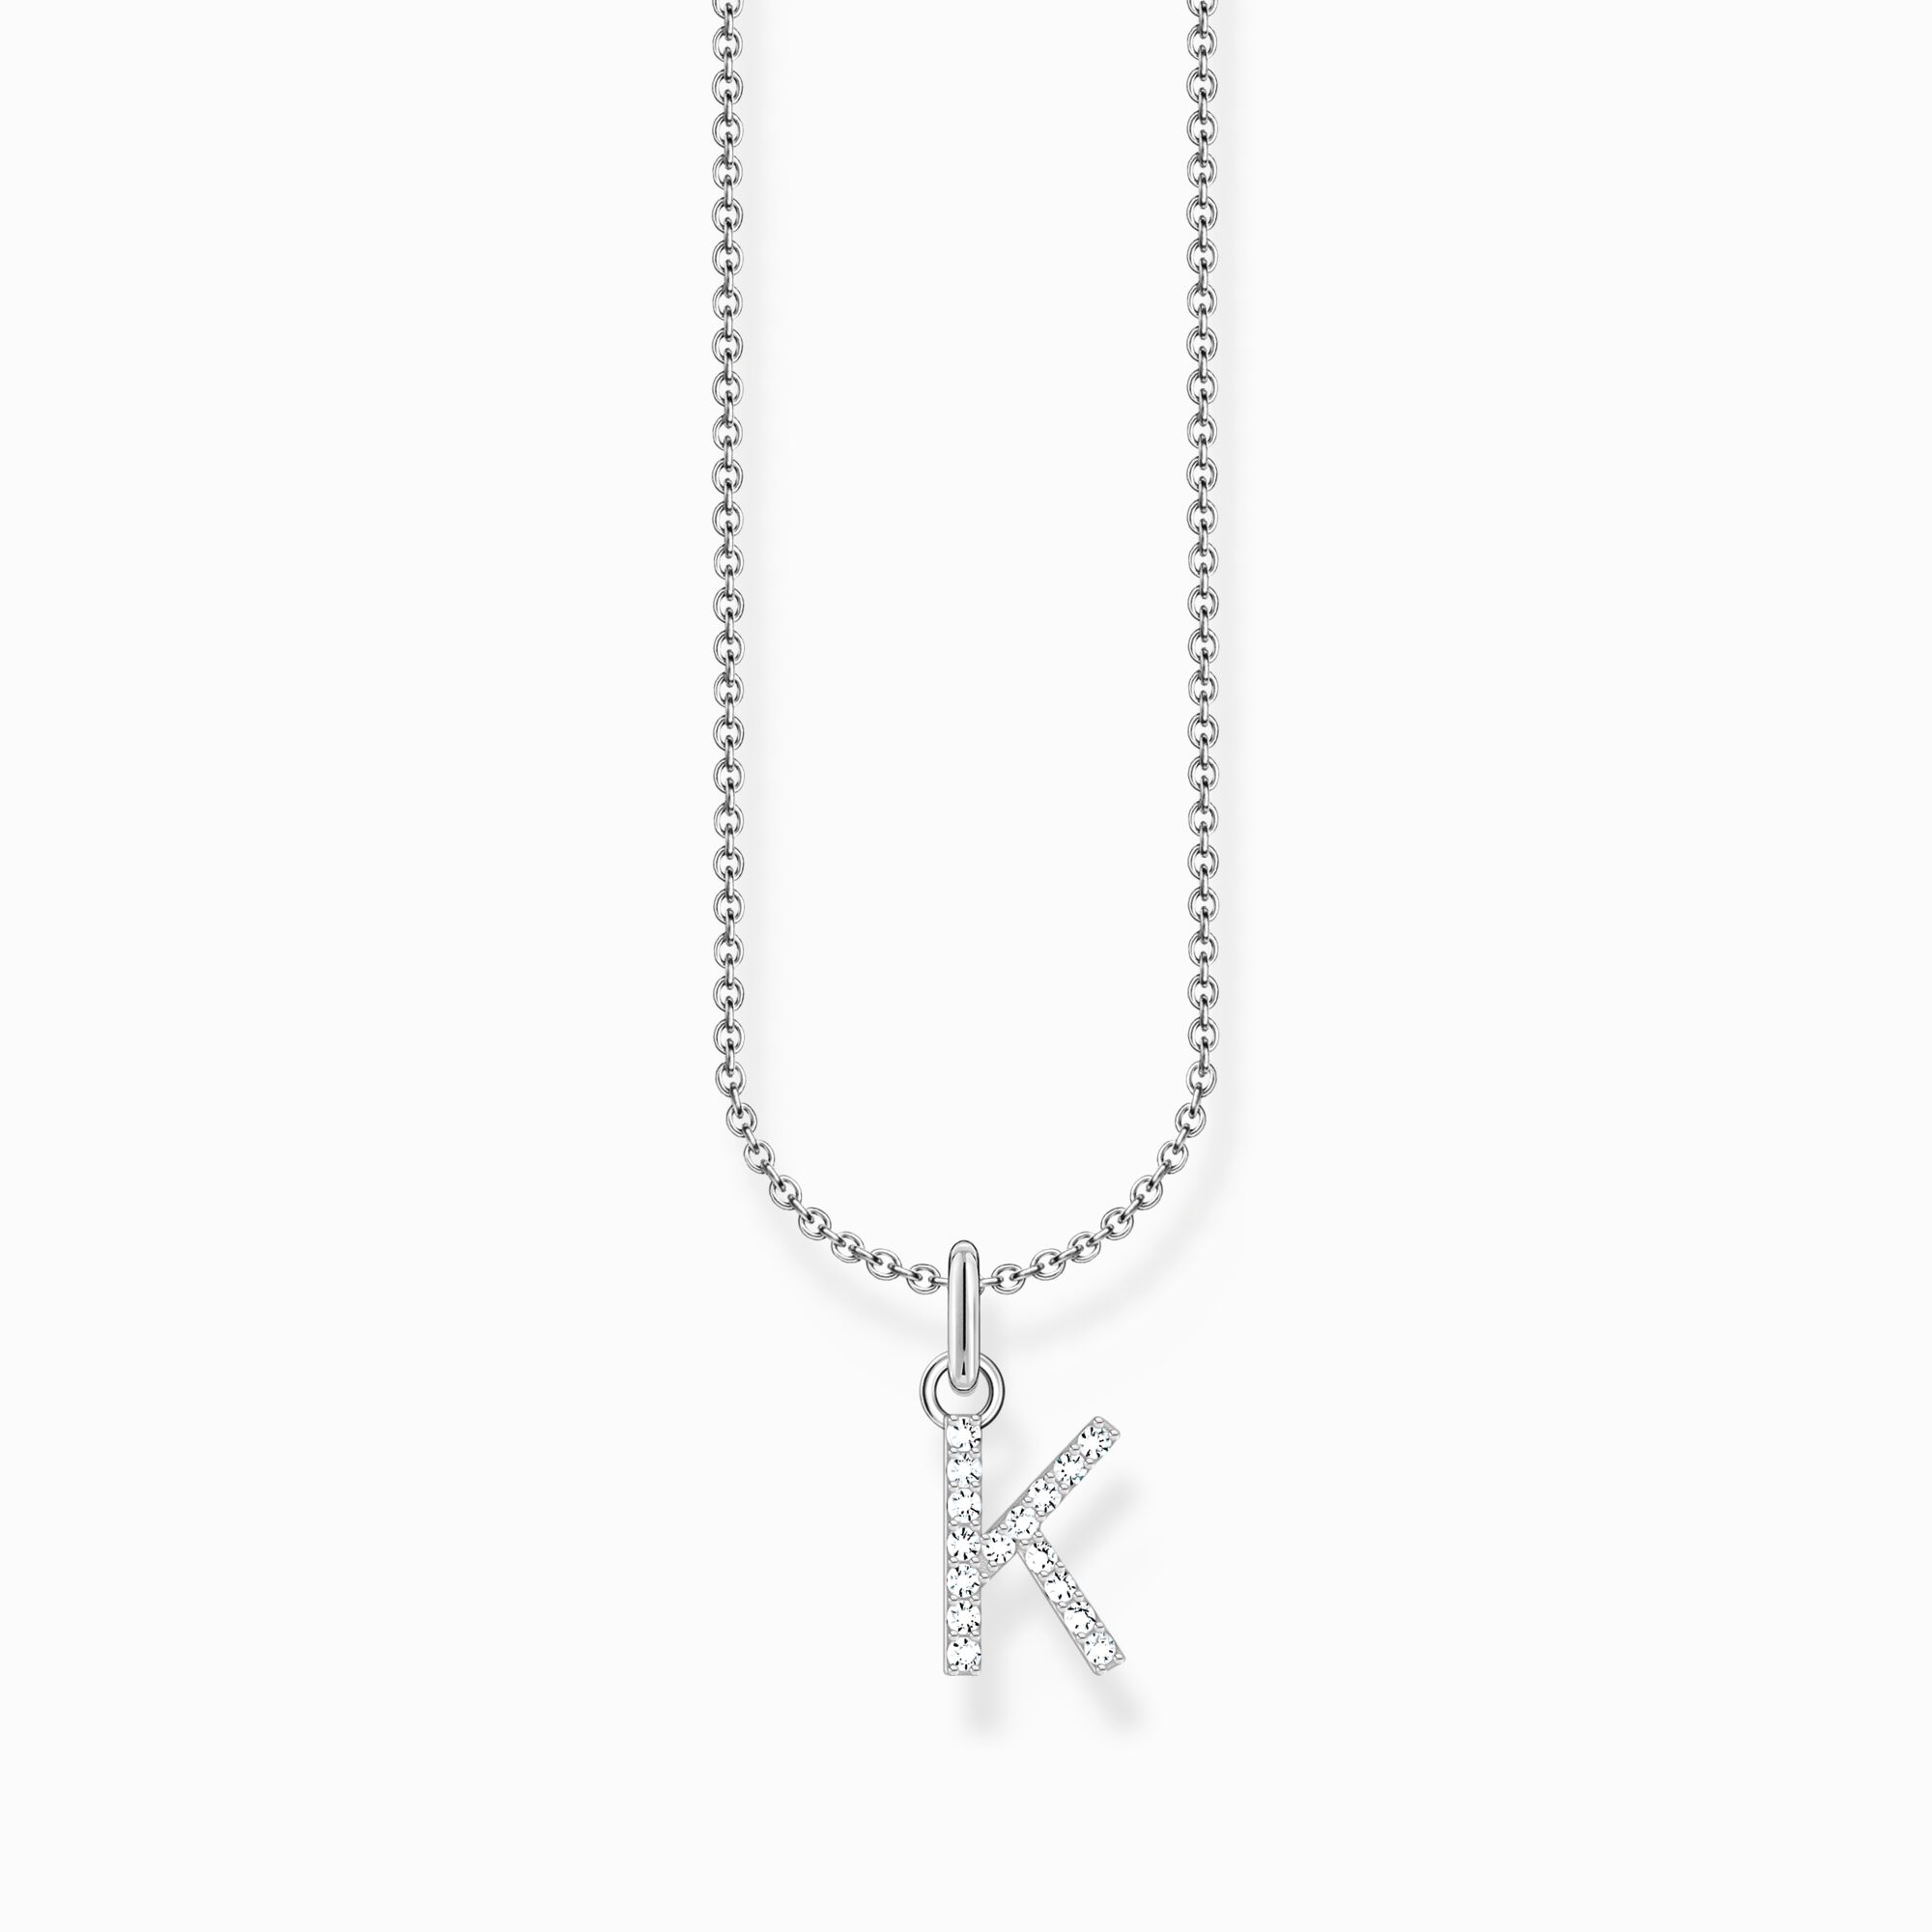 Cadena de plata con colgante de letra K de la colección Charming Collection en la tienda online de THOMAS SABO